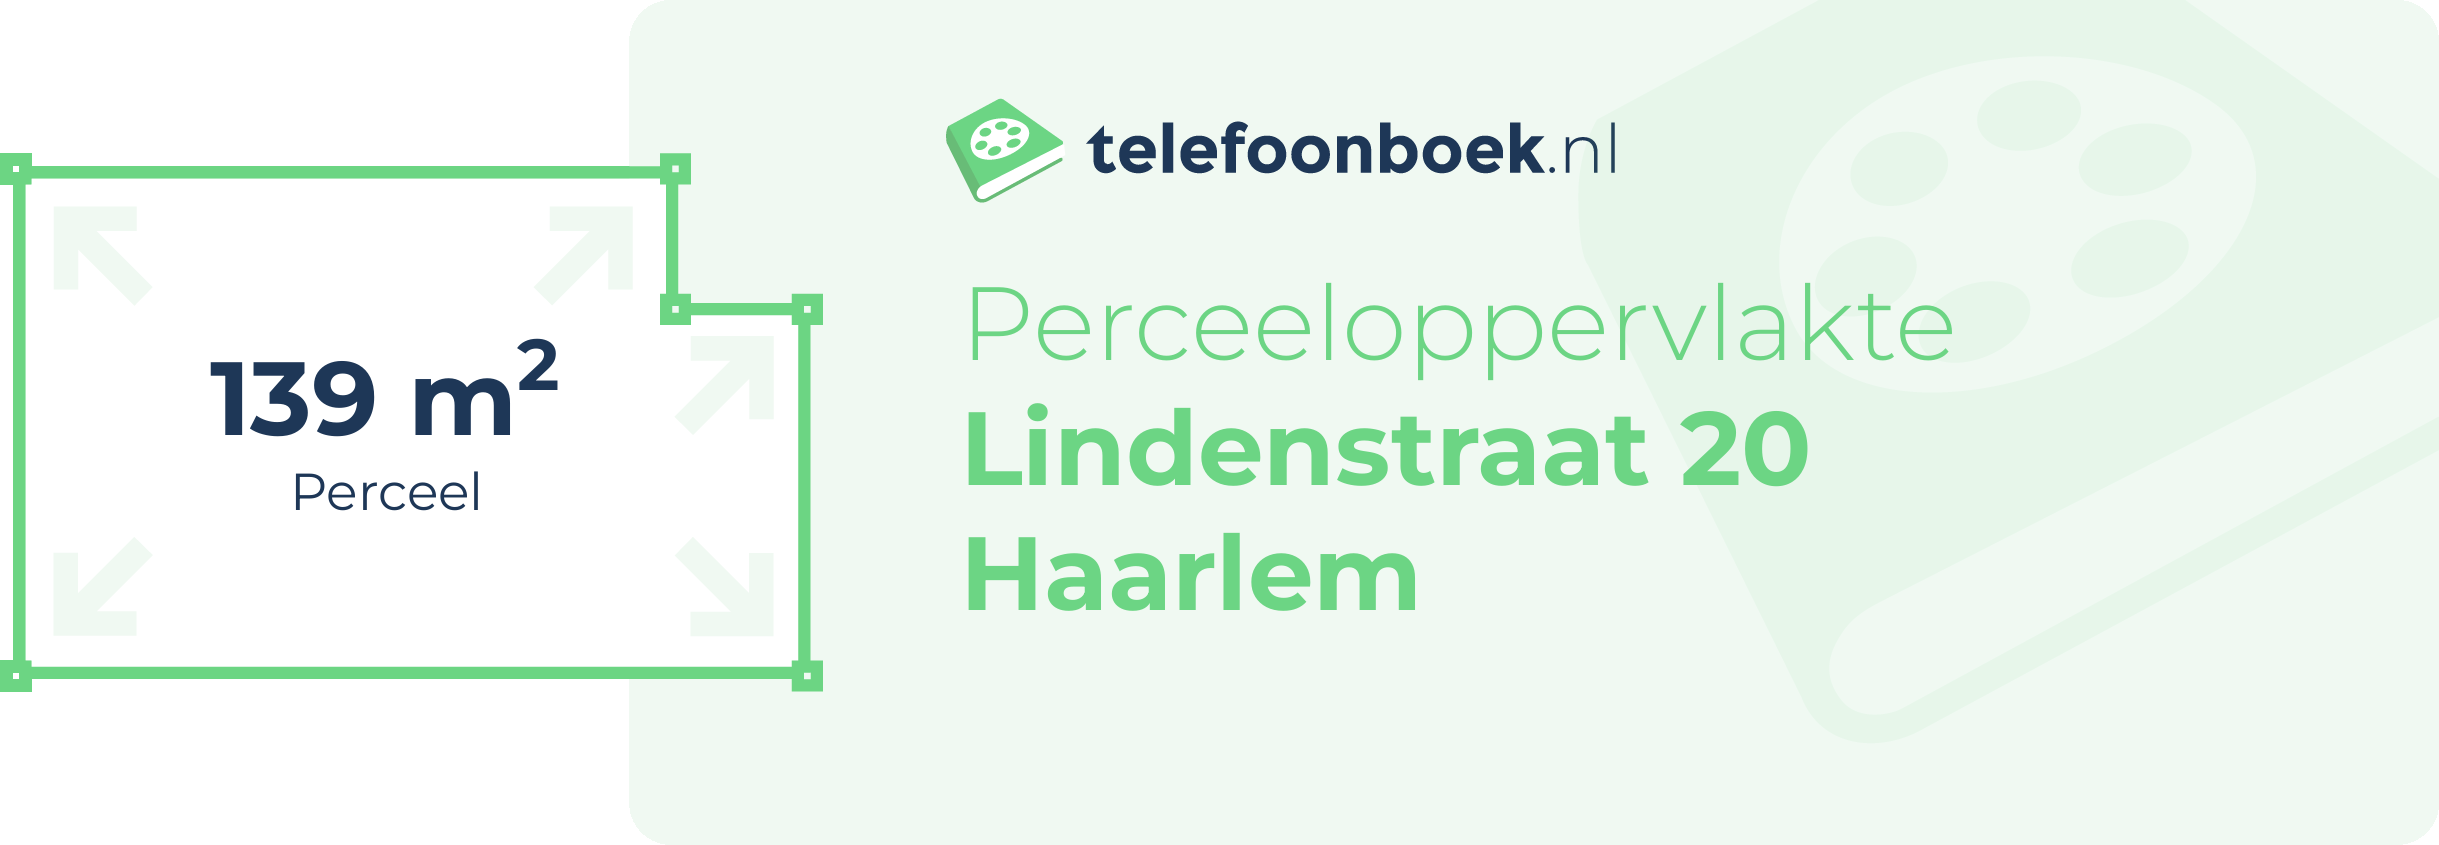 Perceeloppervlakte Lindenstraat 20 Haarlem